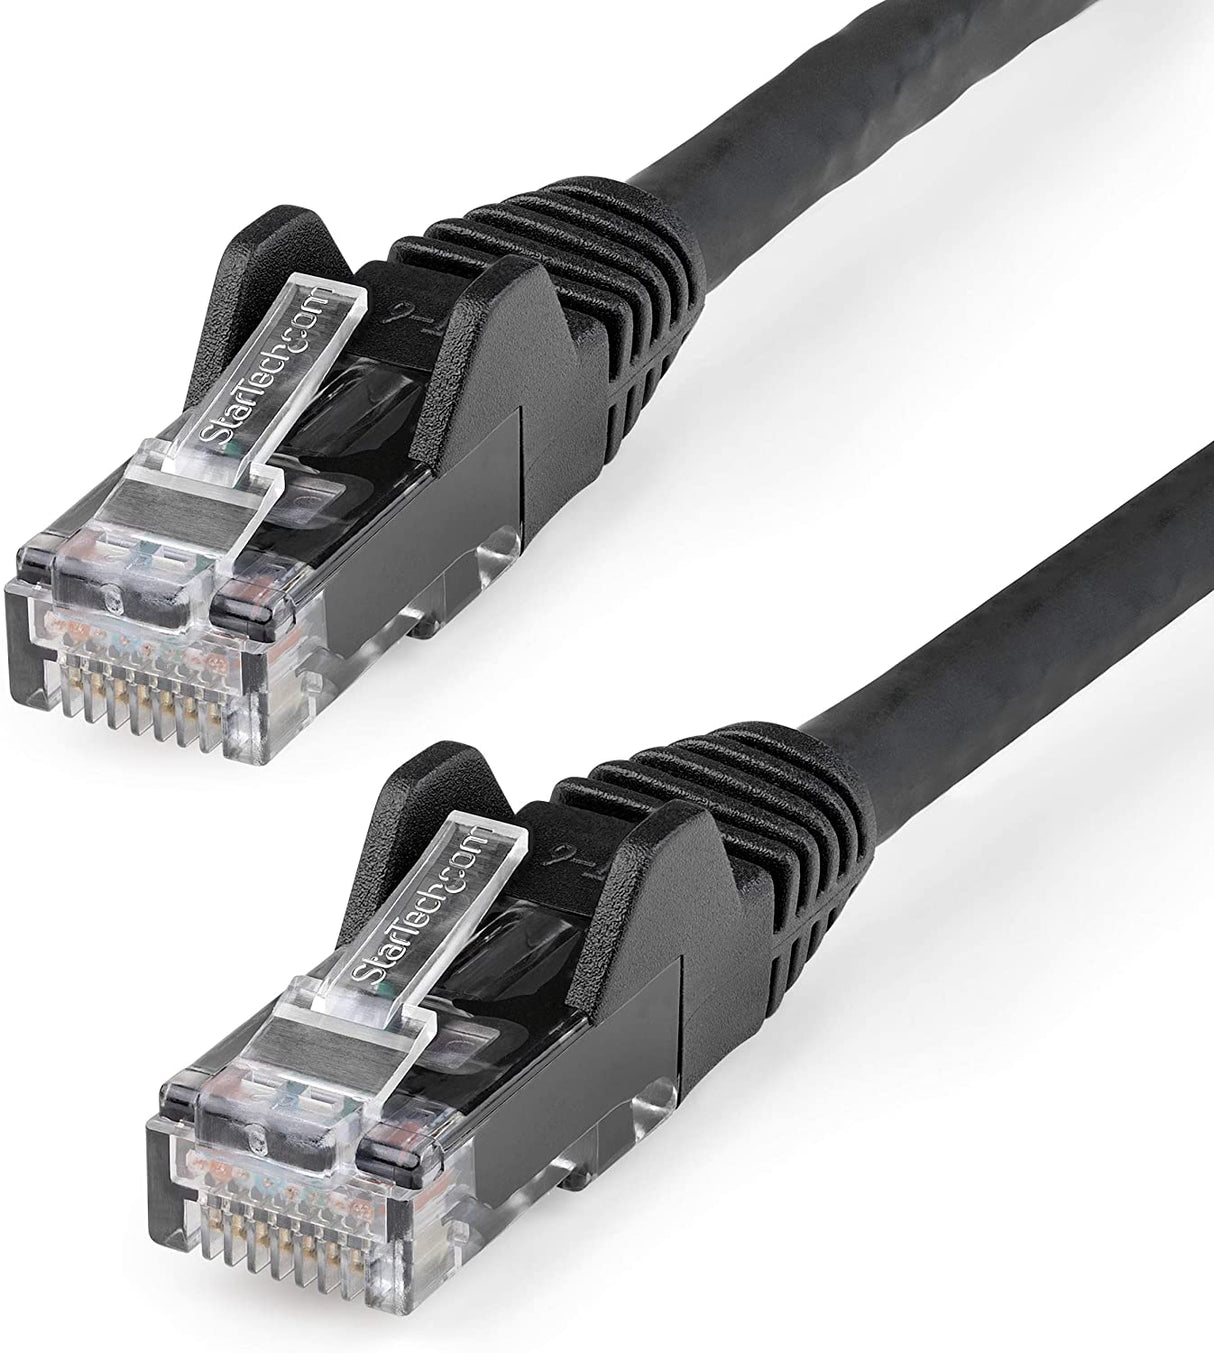 Startech 15ft (4.6m) CAT6 Ethernet Cable - LSZH (Low Smoke Zero Halogen) - 10 Gigabit 650MHz 100W PoE RJ45 UTP Network Patch Cord Snagless w/Strain Relief - Black CAT 6 ETL Verified (N6LPATCH15BK) 15 ft Black